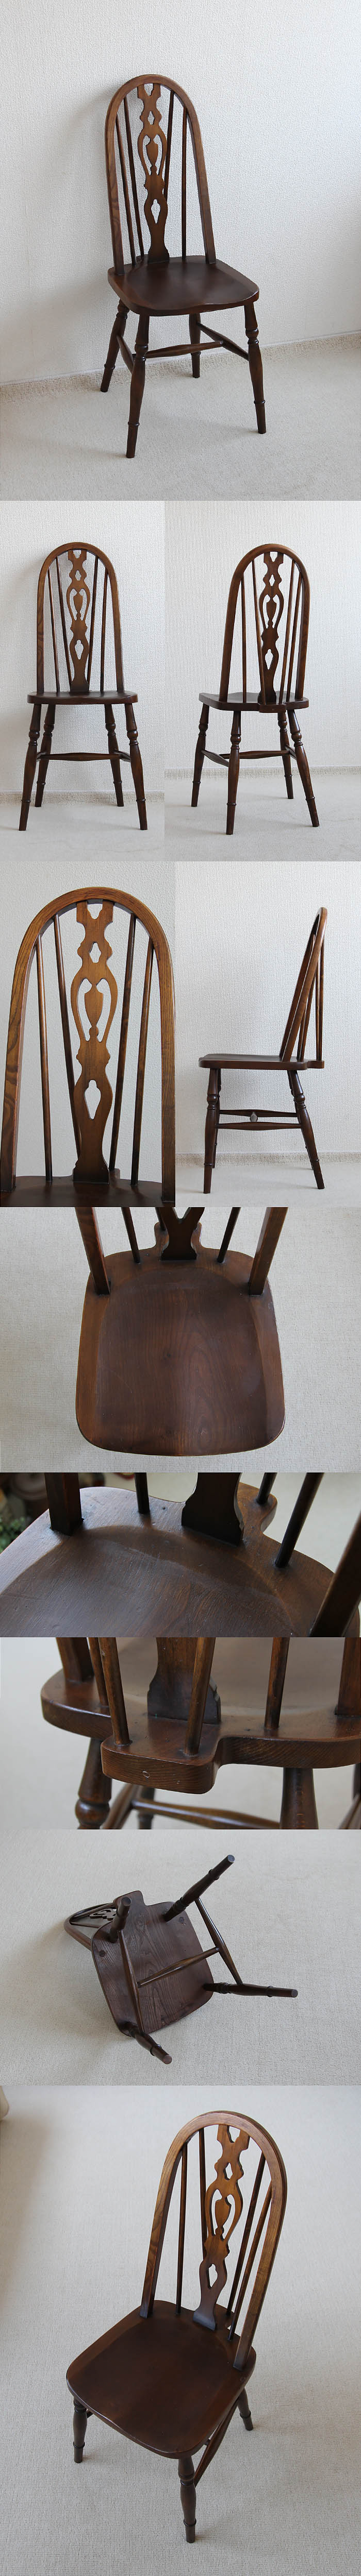 イギリス アンティーク調 ハイバックチェア 木製椅子 ダイニングチェア 家具「ウィンザースタイル」V-902